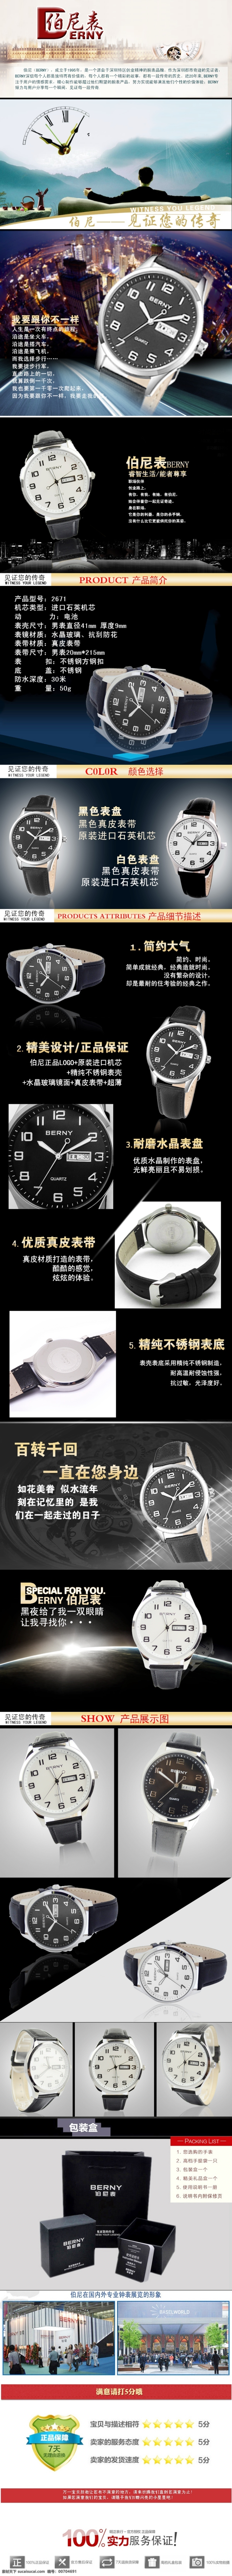 时尚 超 炫 背景 伯尼 手表 海报 详情 页 淘宝素材 淘宝设计 淘宝模板下载 黑色